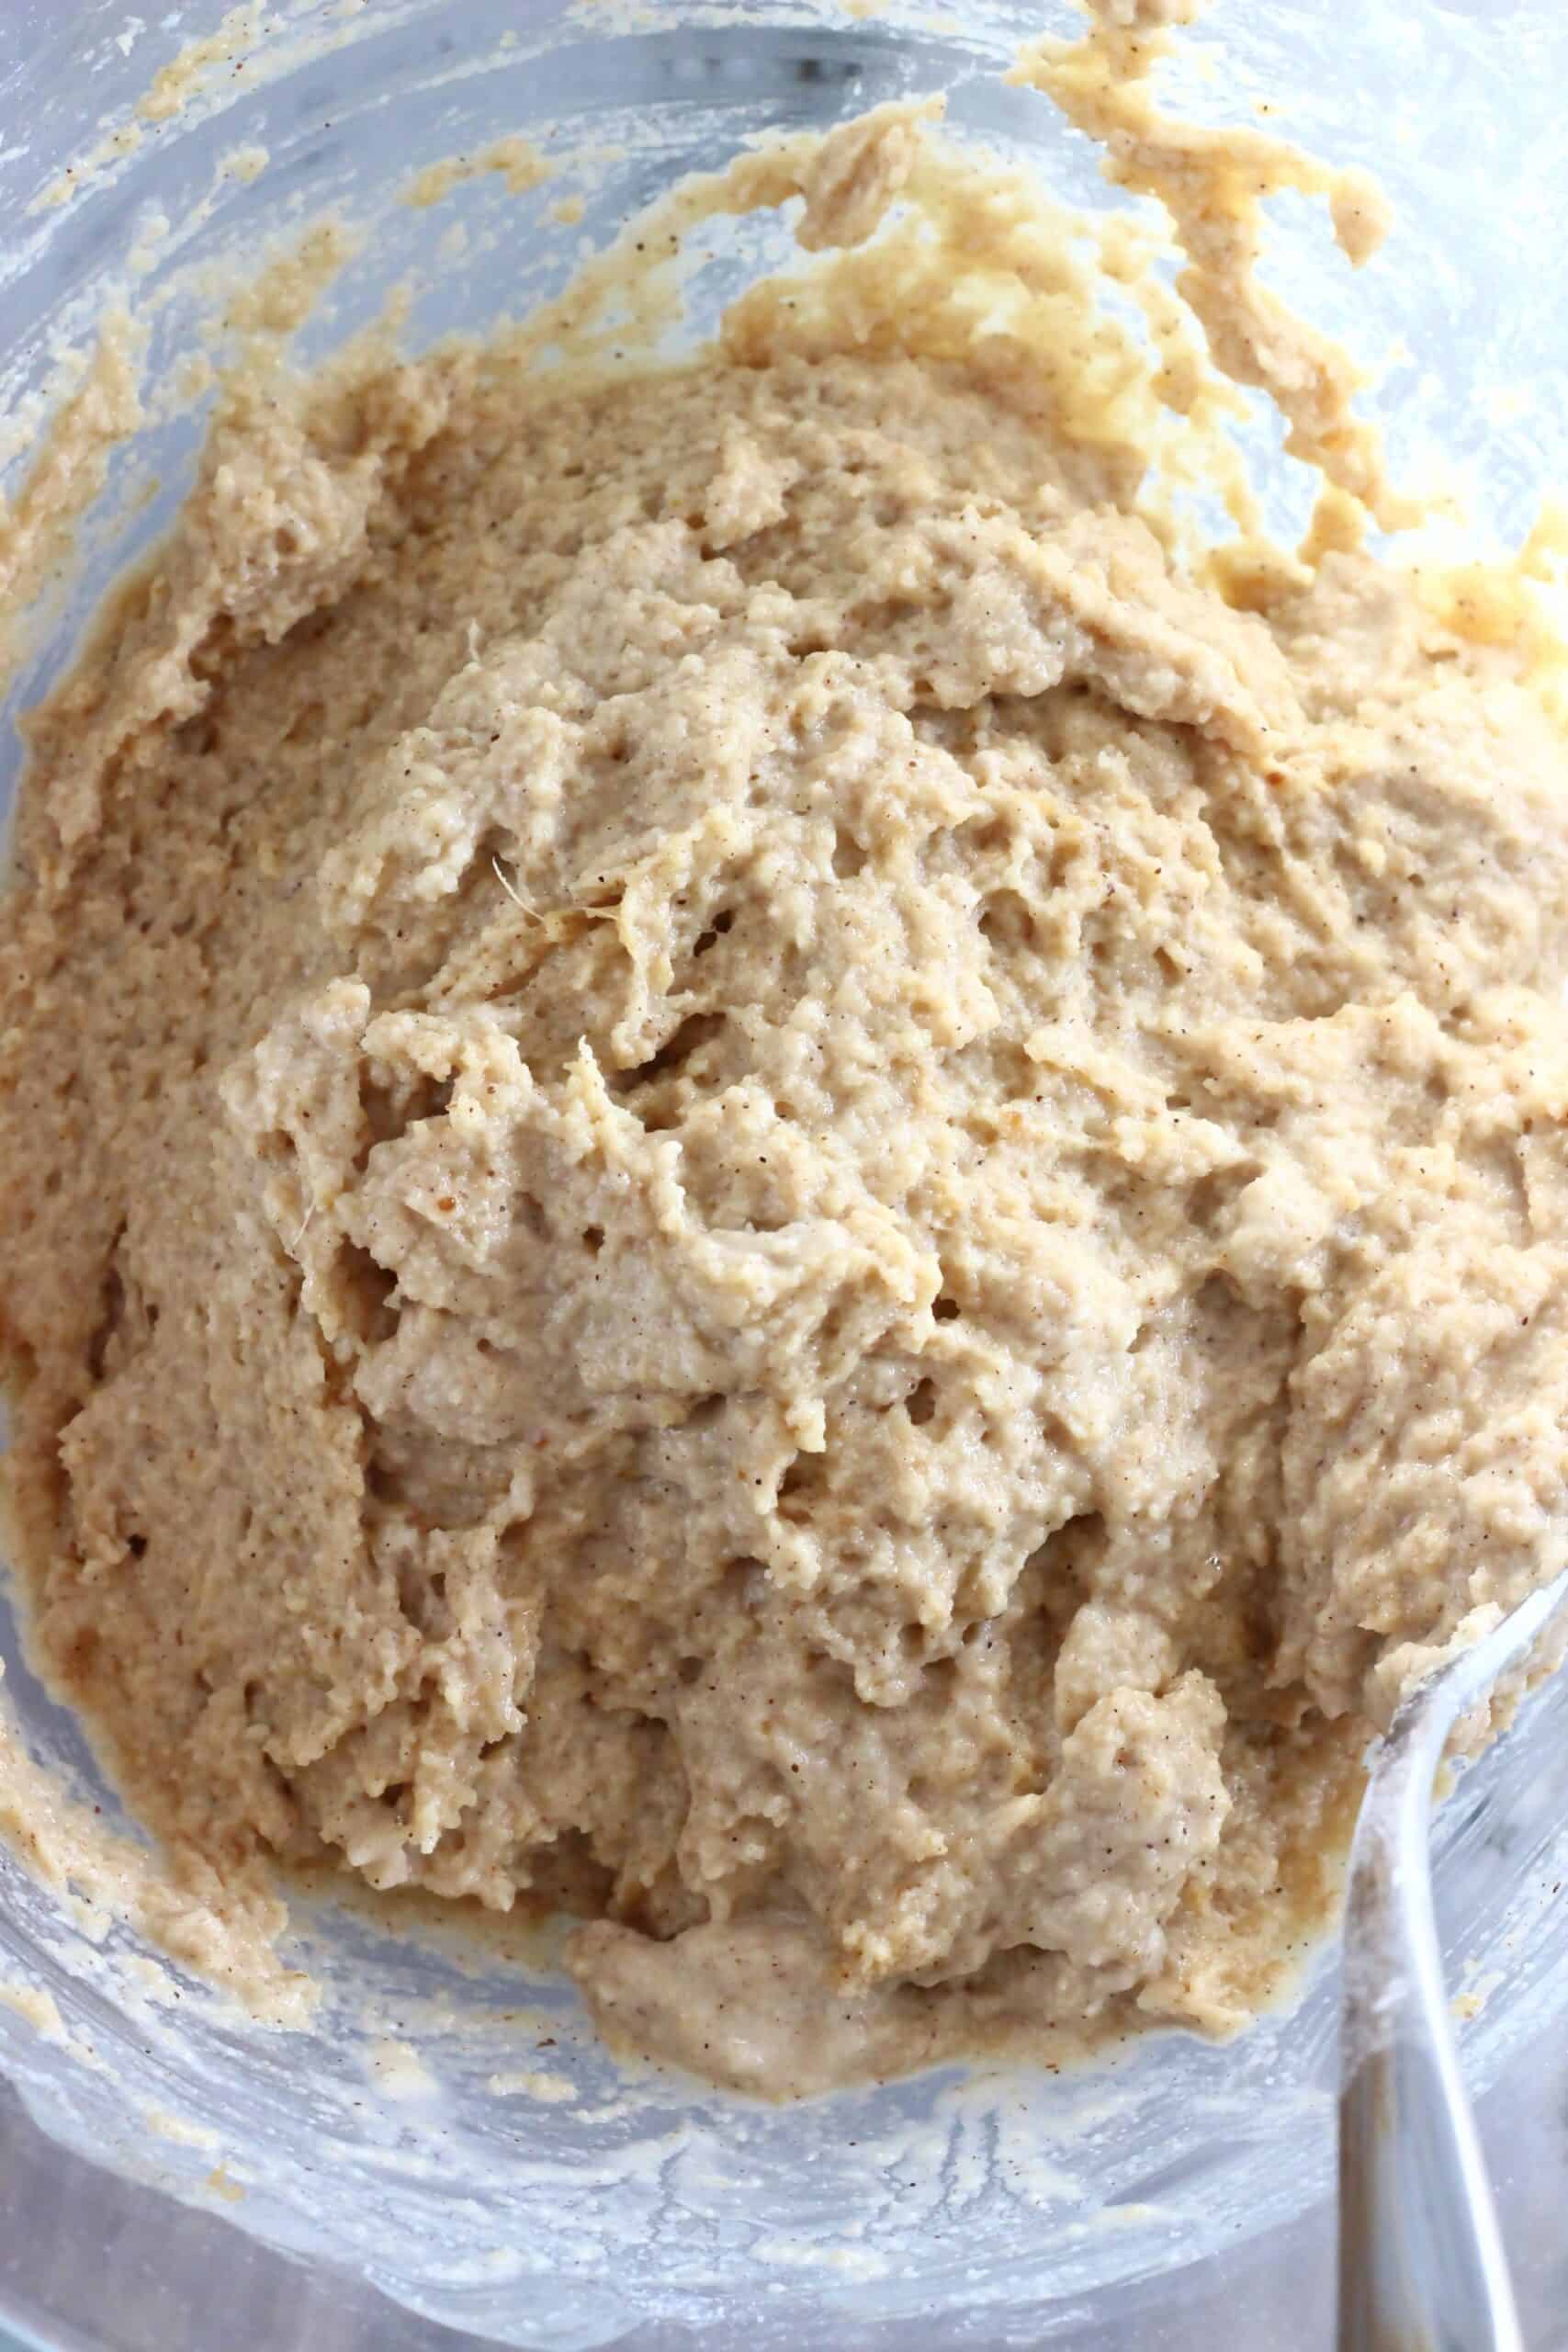 Raw gluten-free vegan ginger cake batter in a mixing bowl